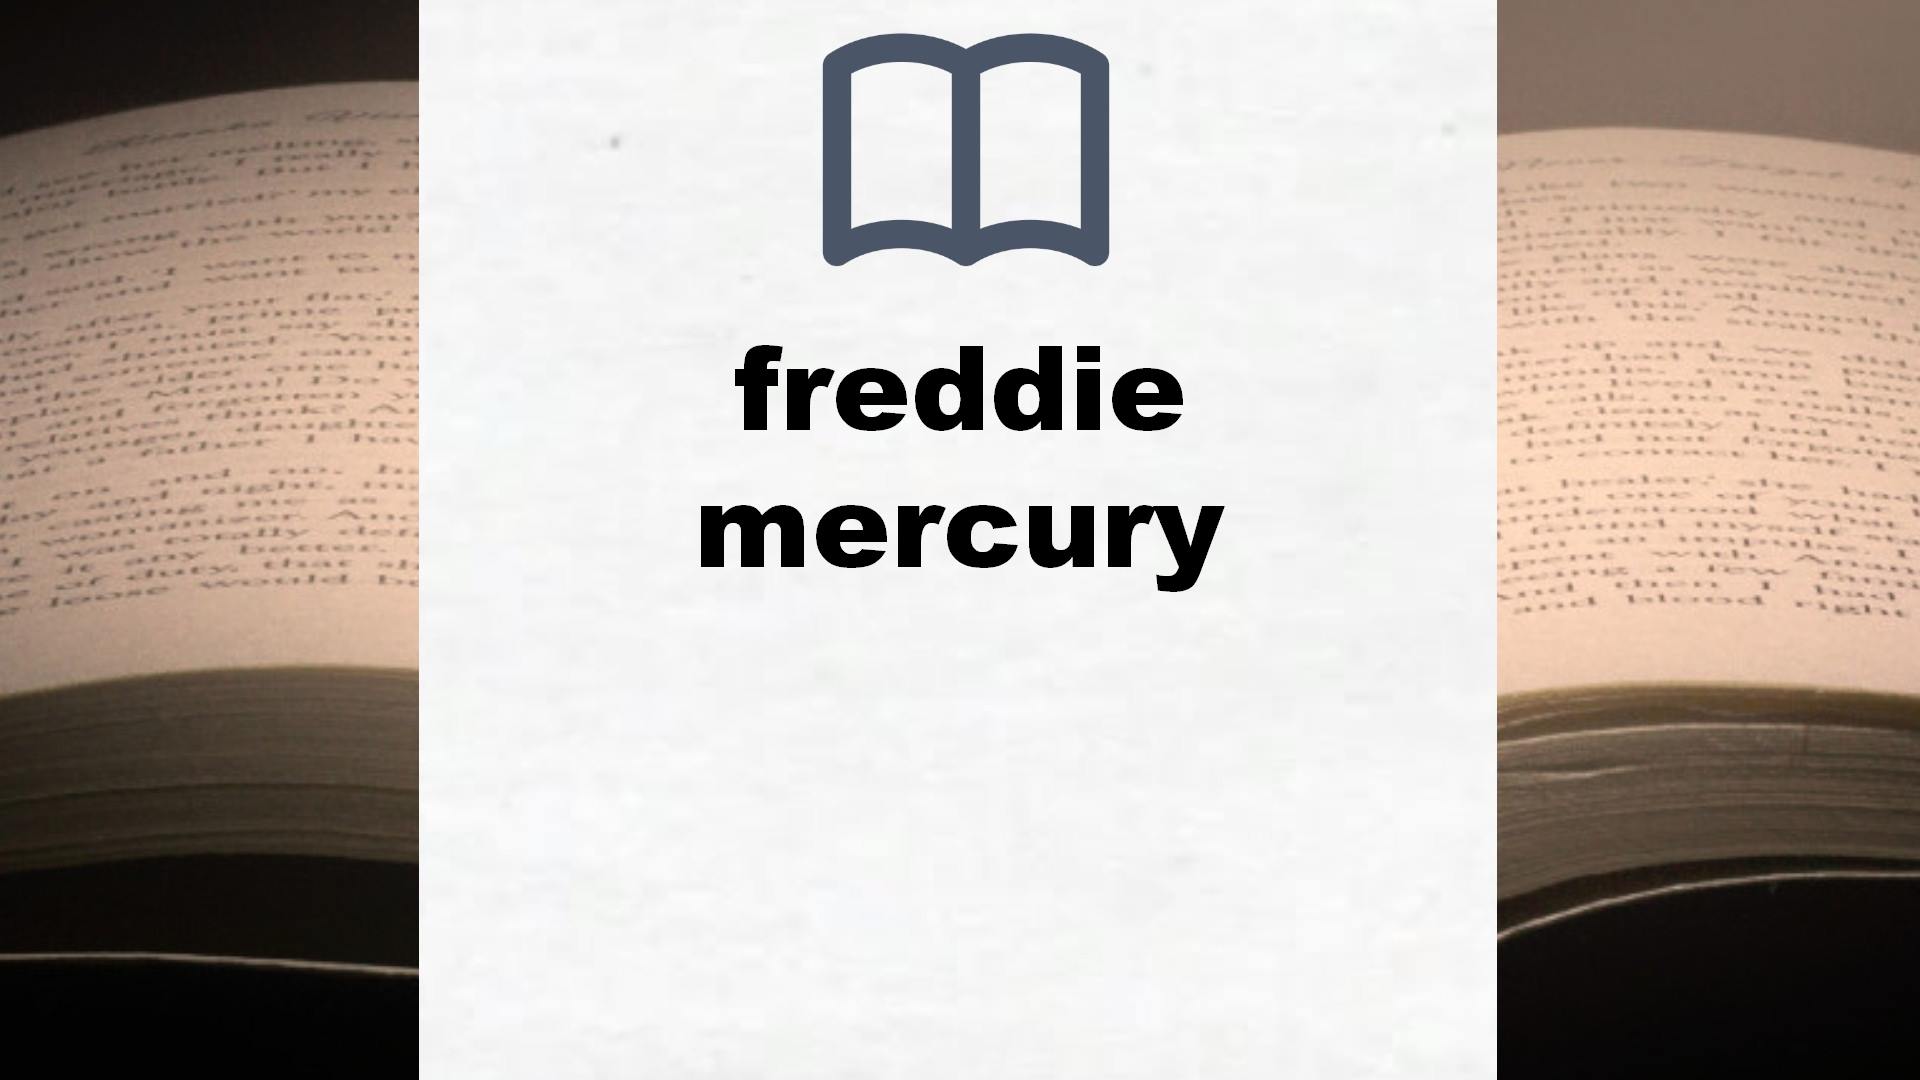 Libros sobre freddie mercury